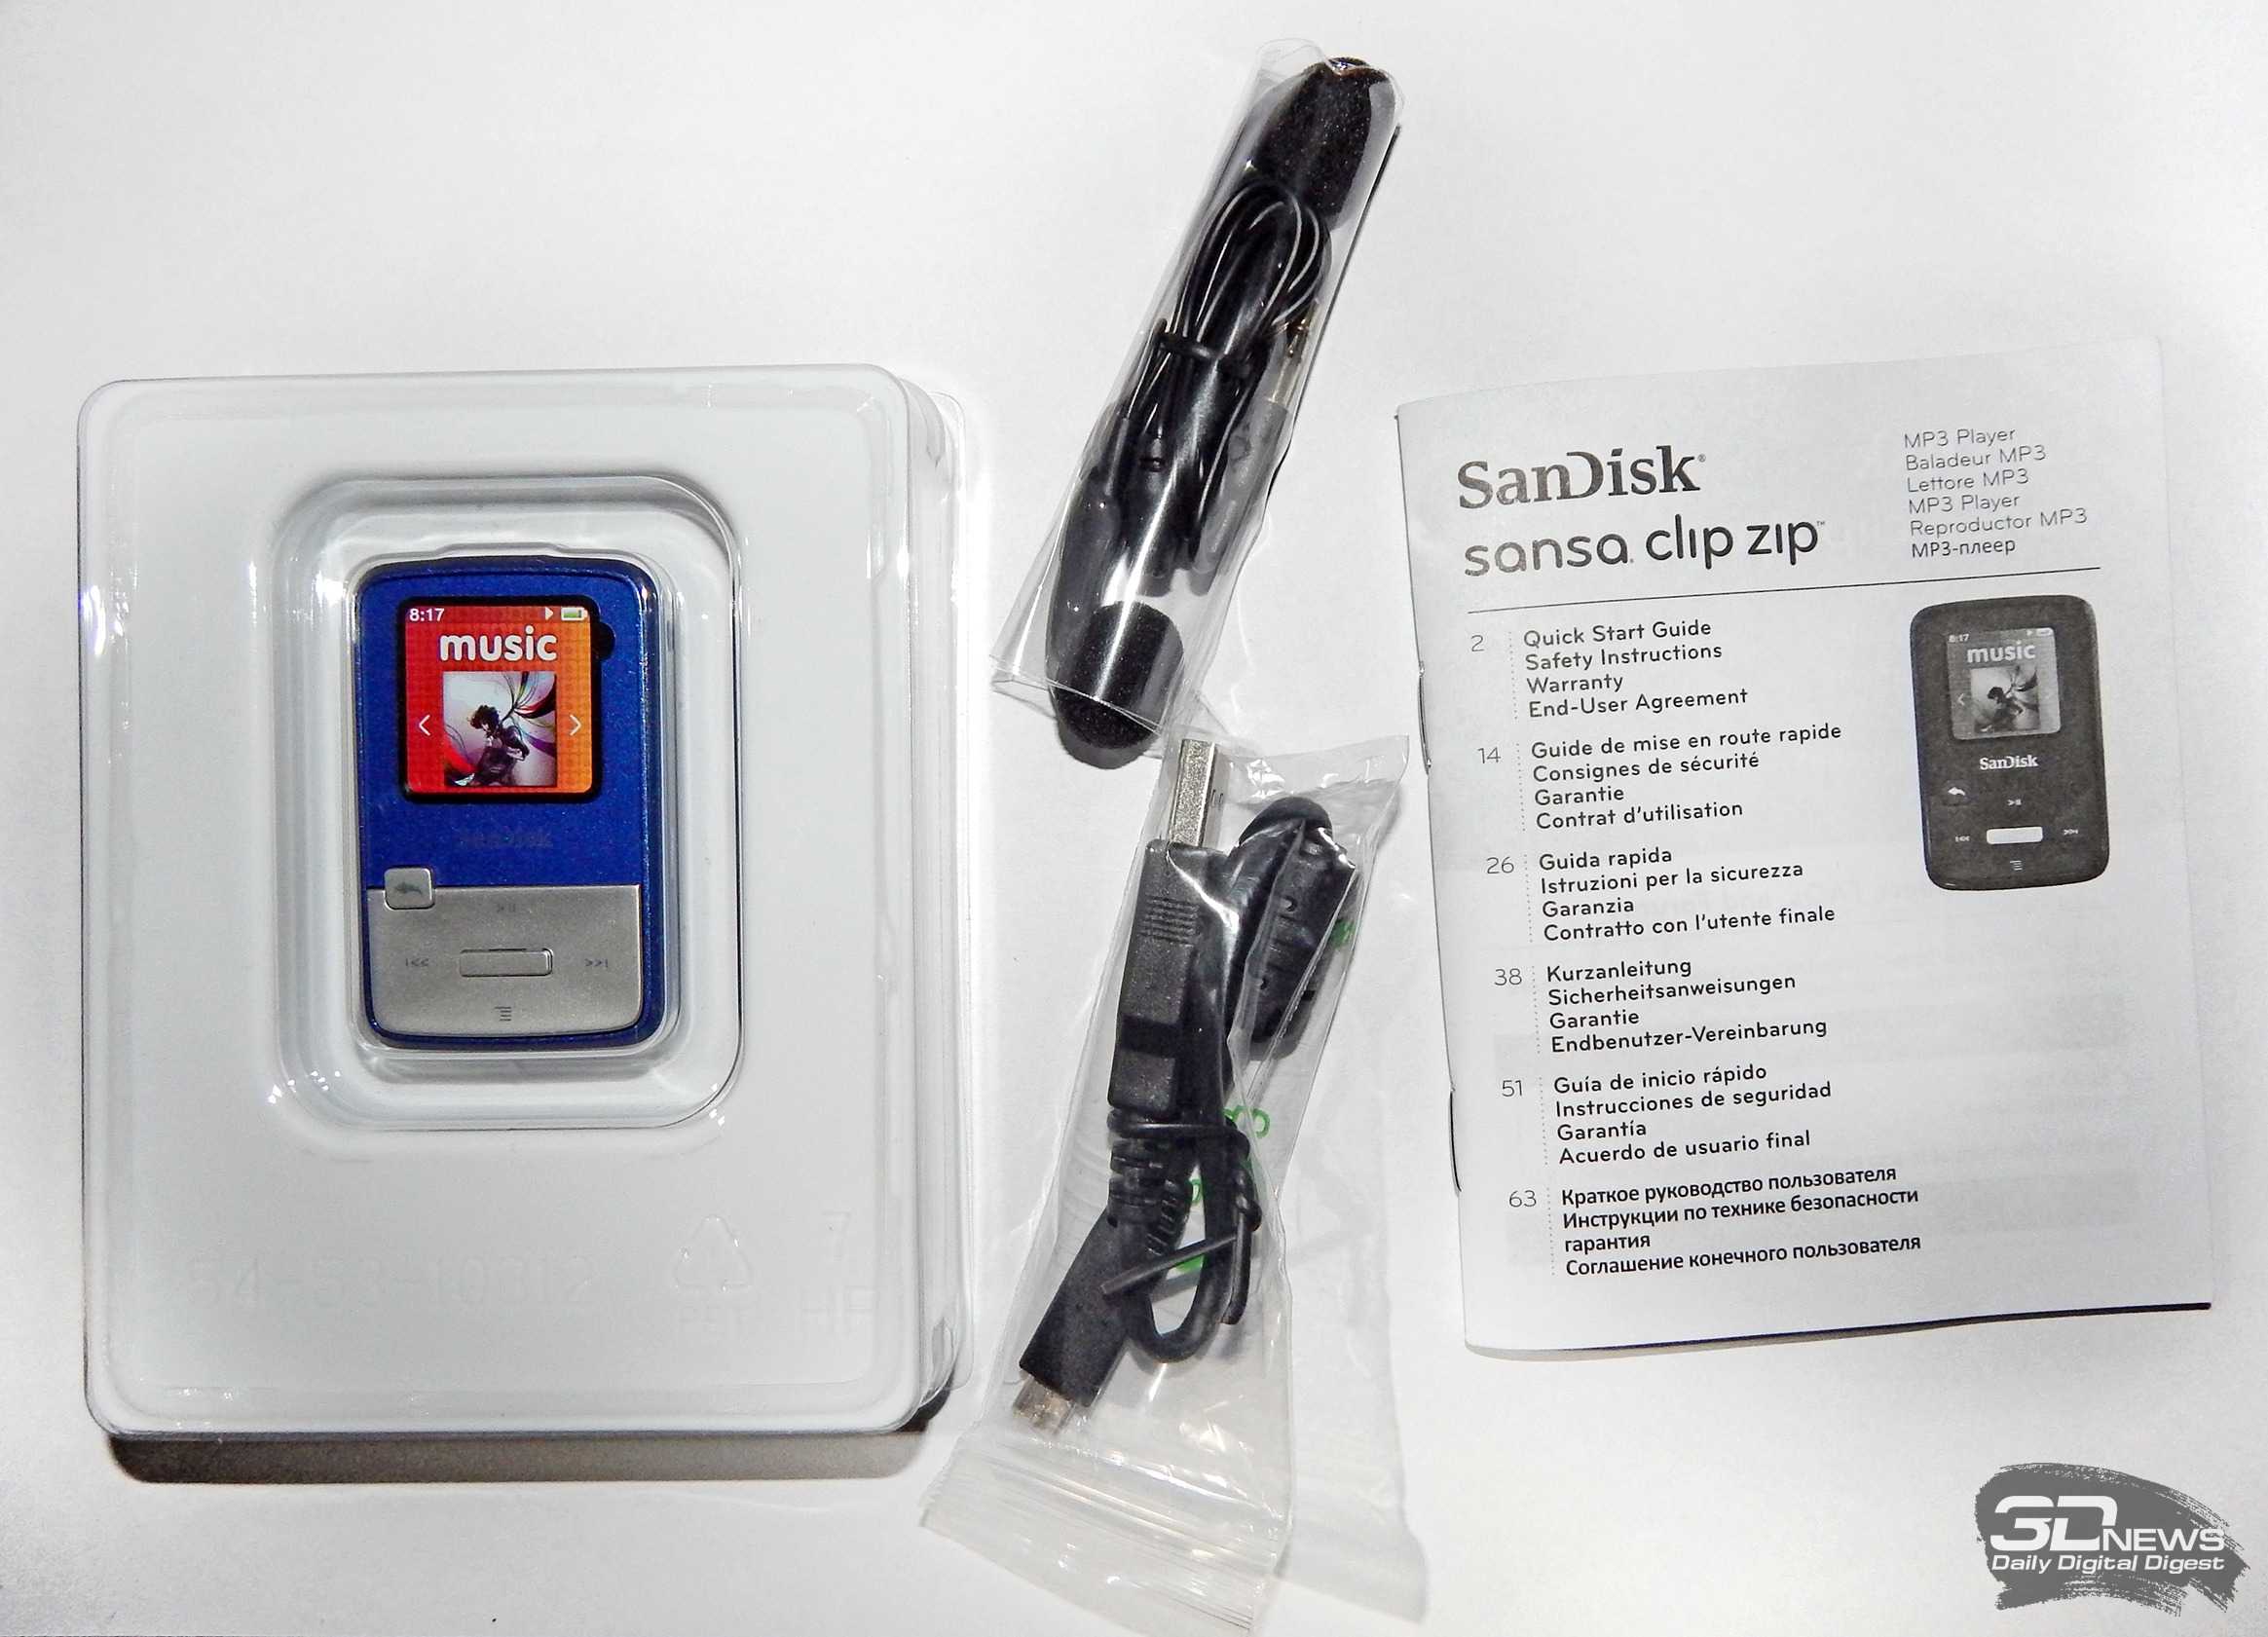 MP3-плеера SanDisk Sansa Clip Zip 4Gb - подробные характеристики обзоры видео фото Цены в интернет-магазинах где можно купить mp3-плееру SanDisk Sansa Clip Zip 4Gb